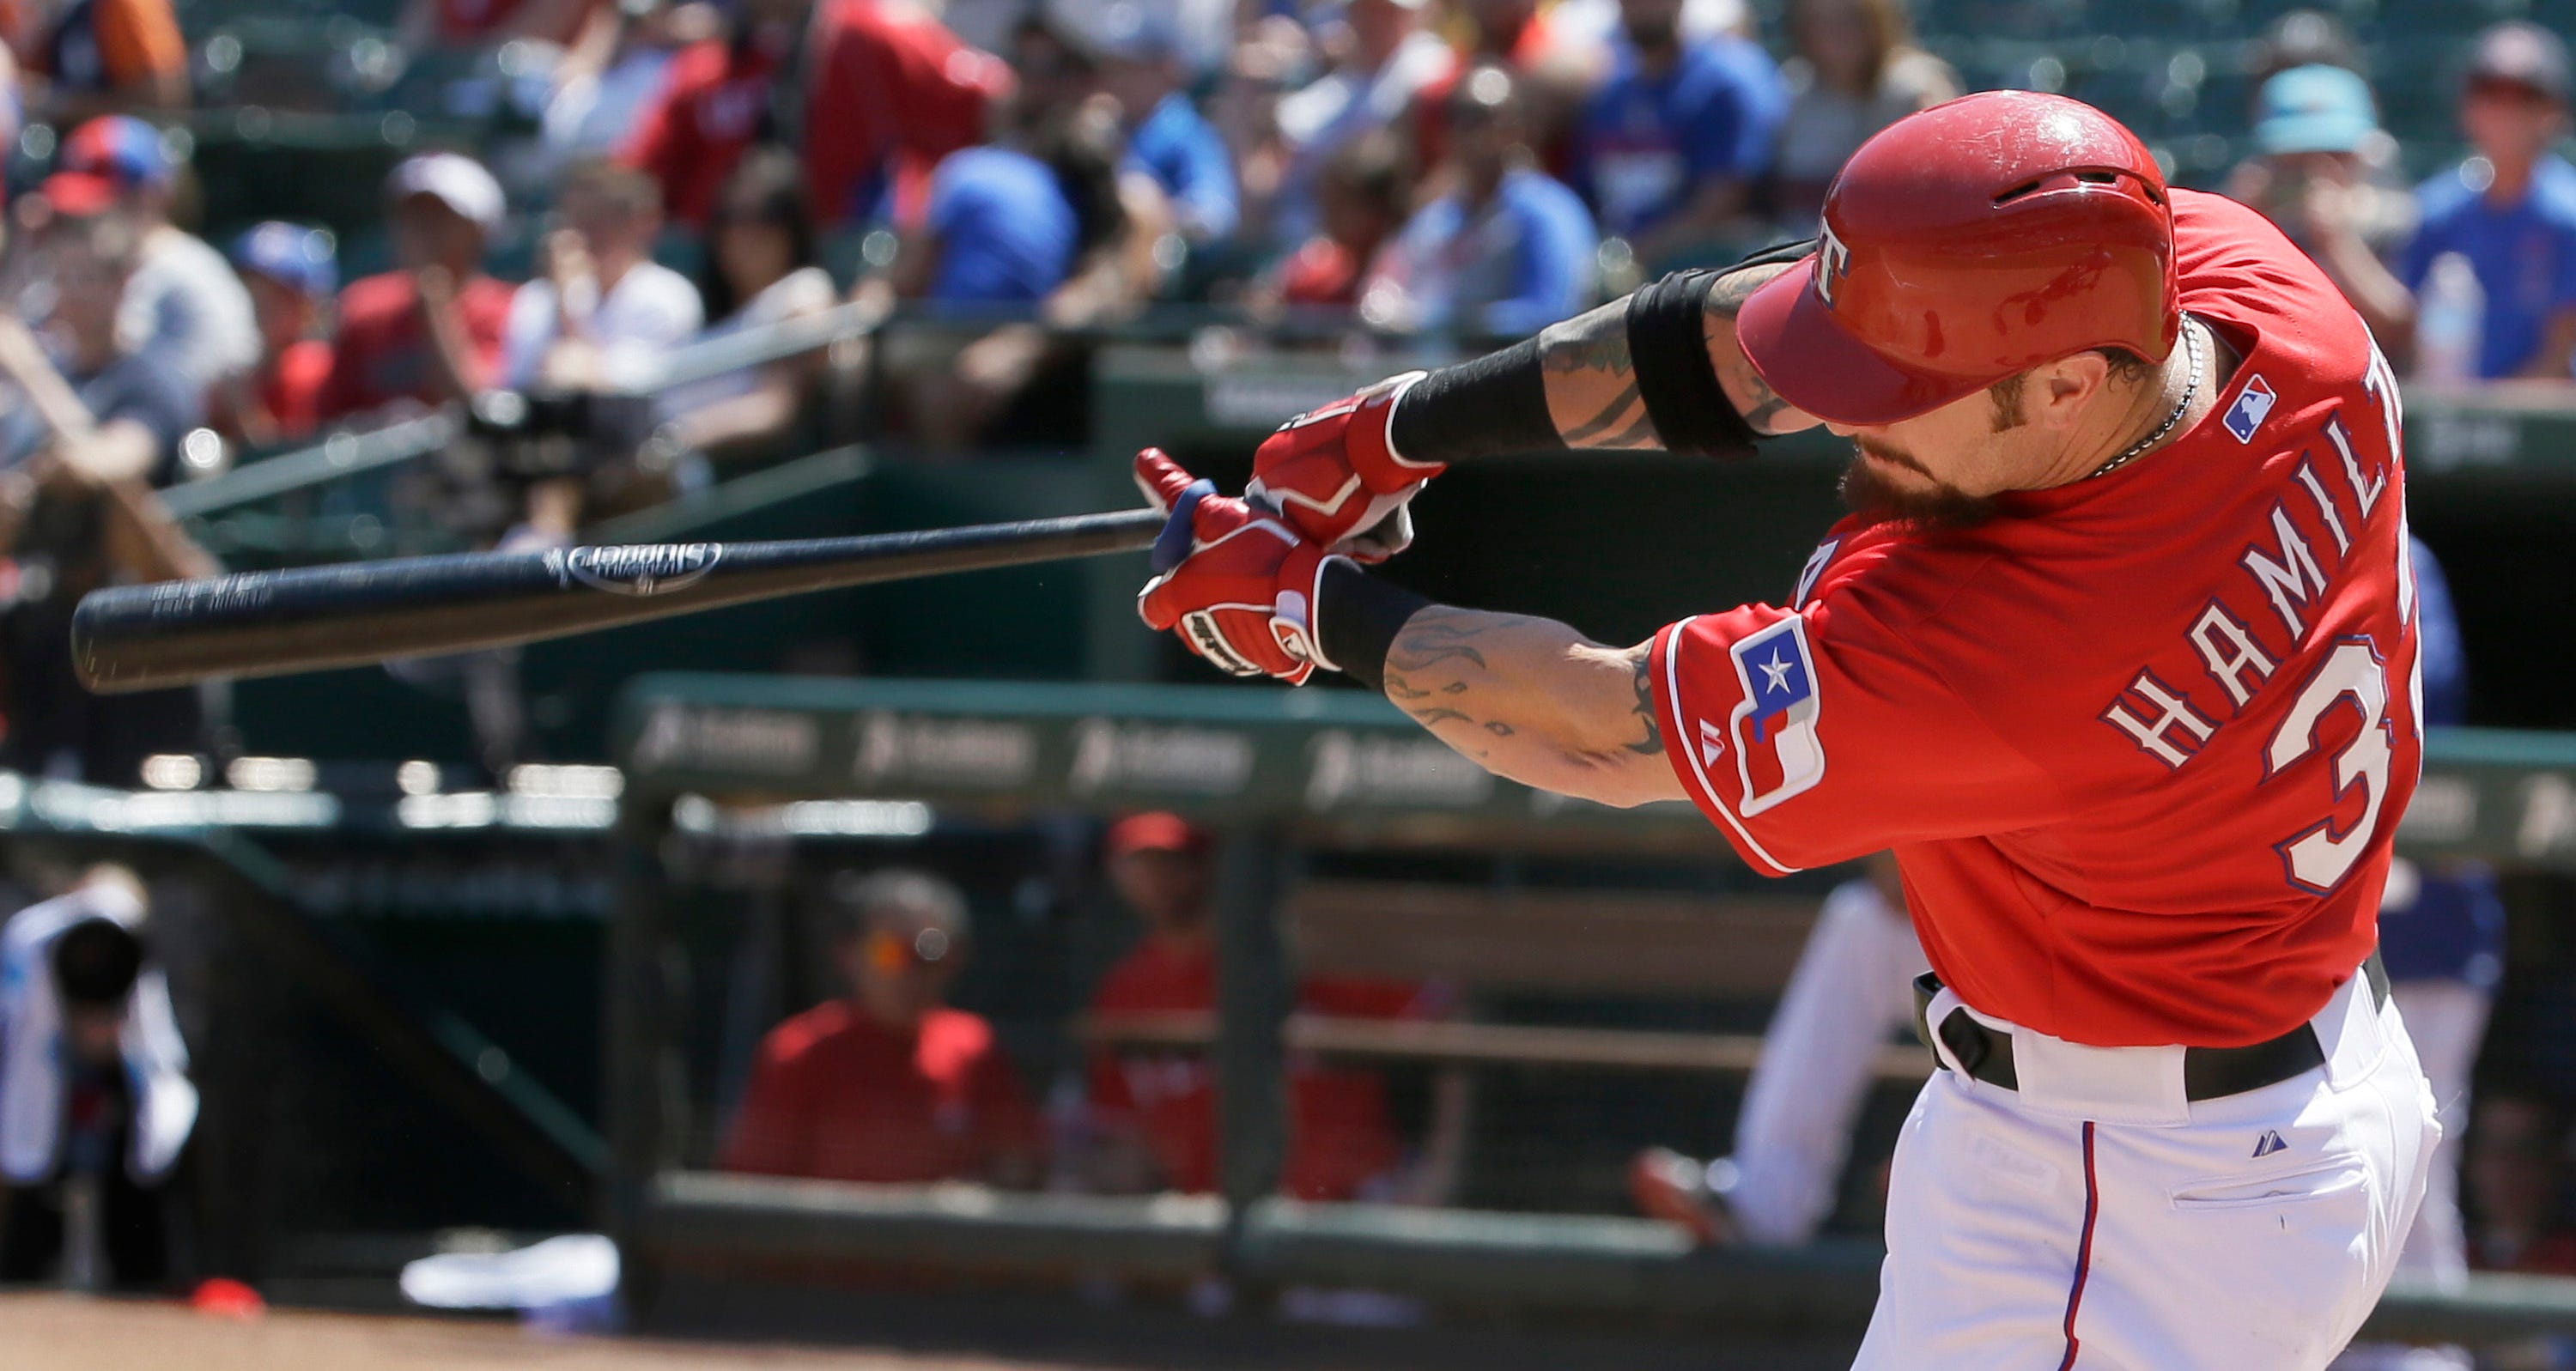 MLB notes: Josh Hamilton's next step toward majors